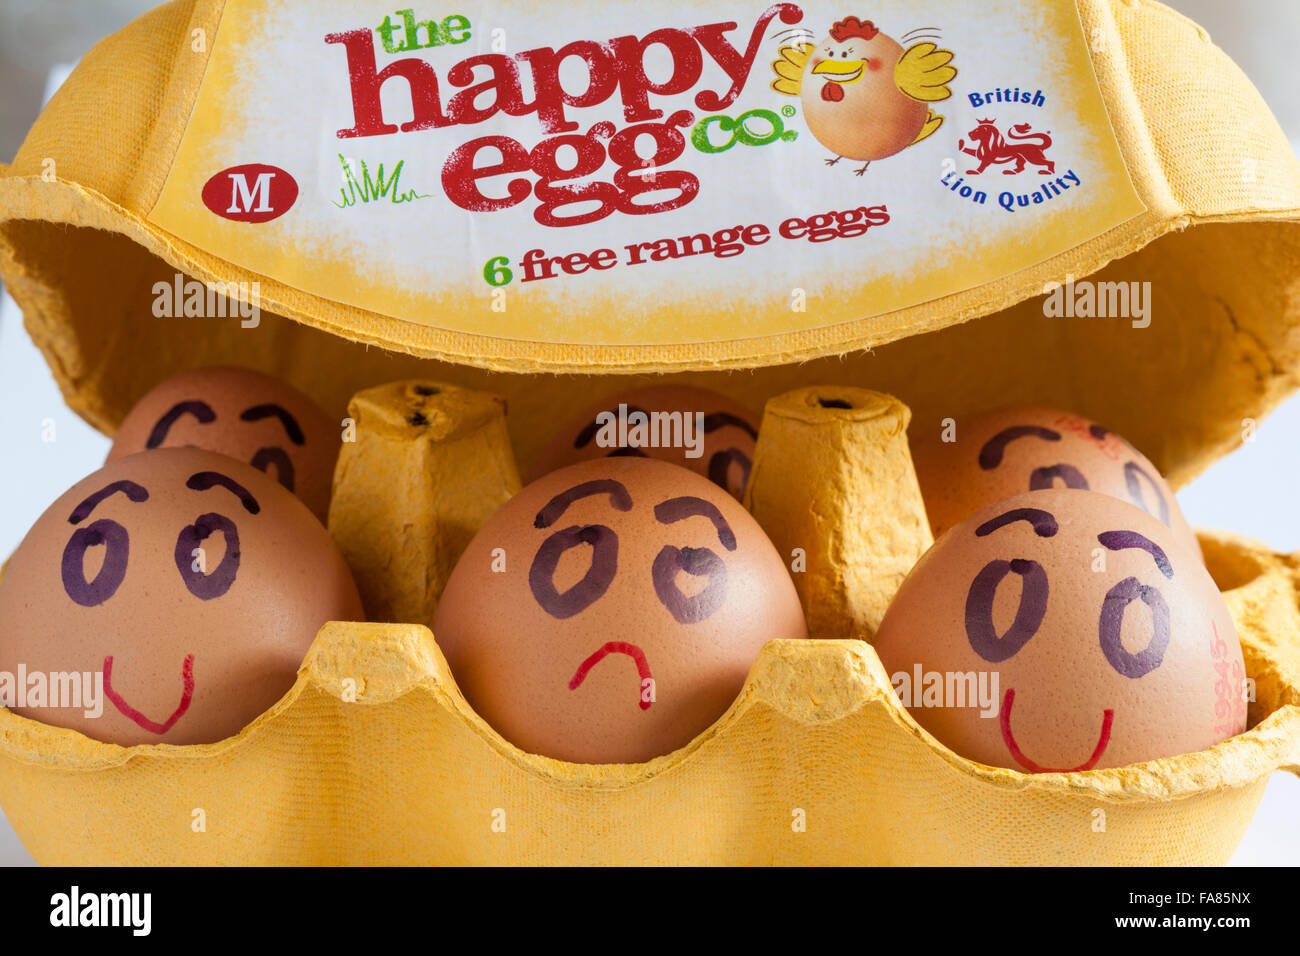 Karton mit den happy co 6 Freilandhaltung Eiern British Lion Eierqualität M mit Deckel öffnen, Inhalt mit Eiern lächelnd und traurig zu zeigen Stockfoto